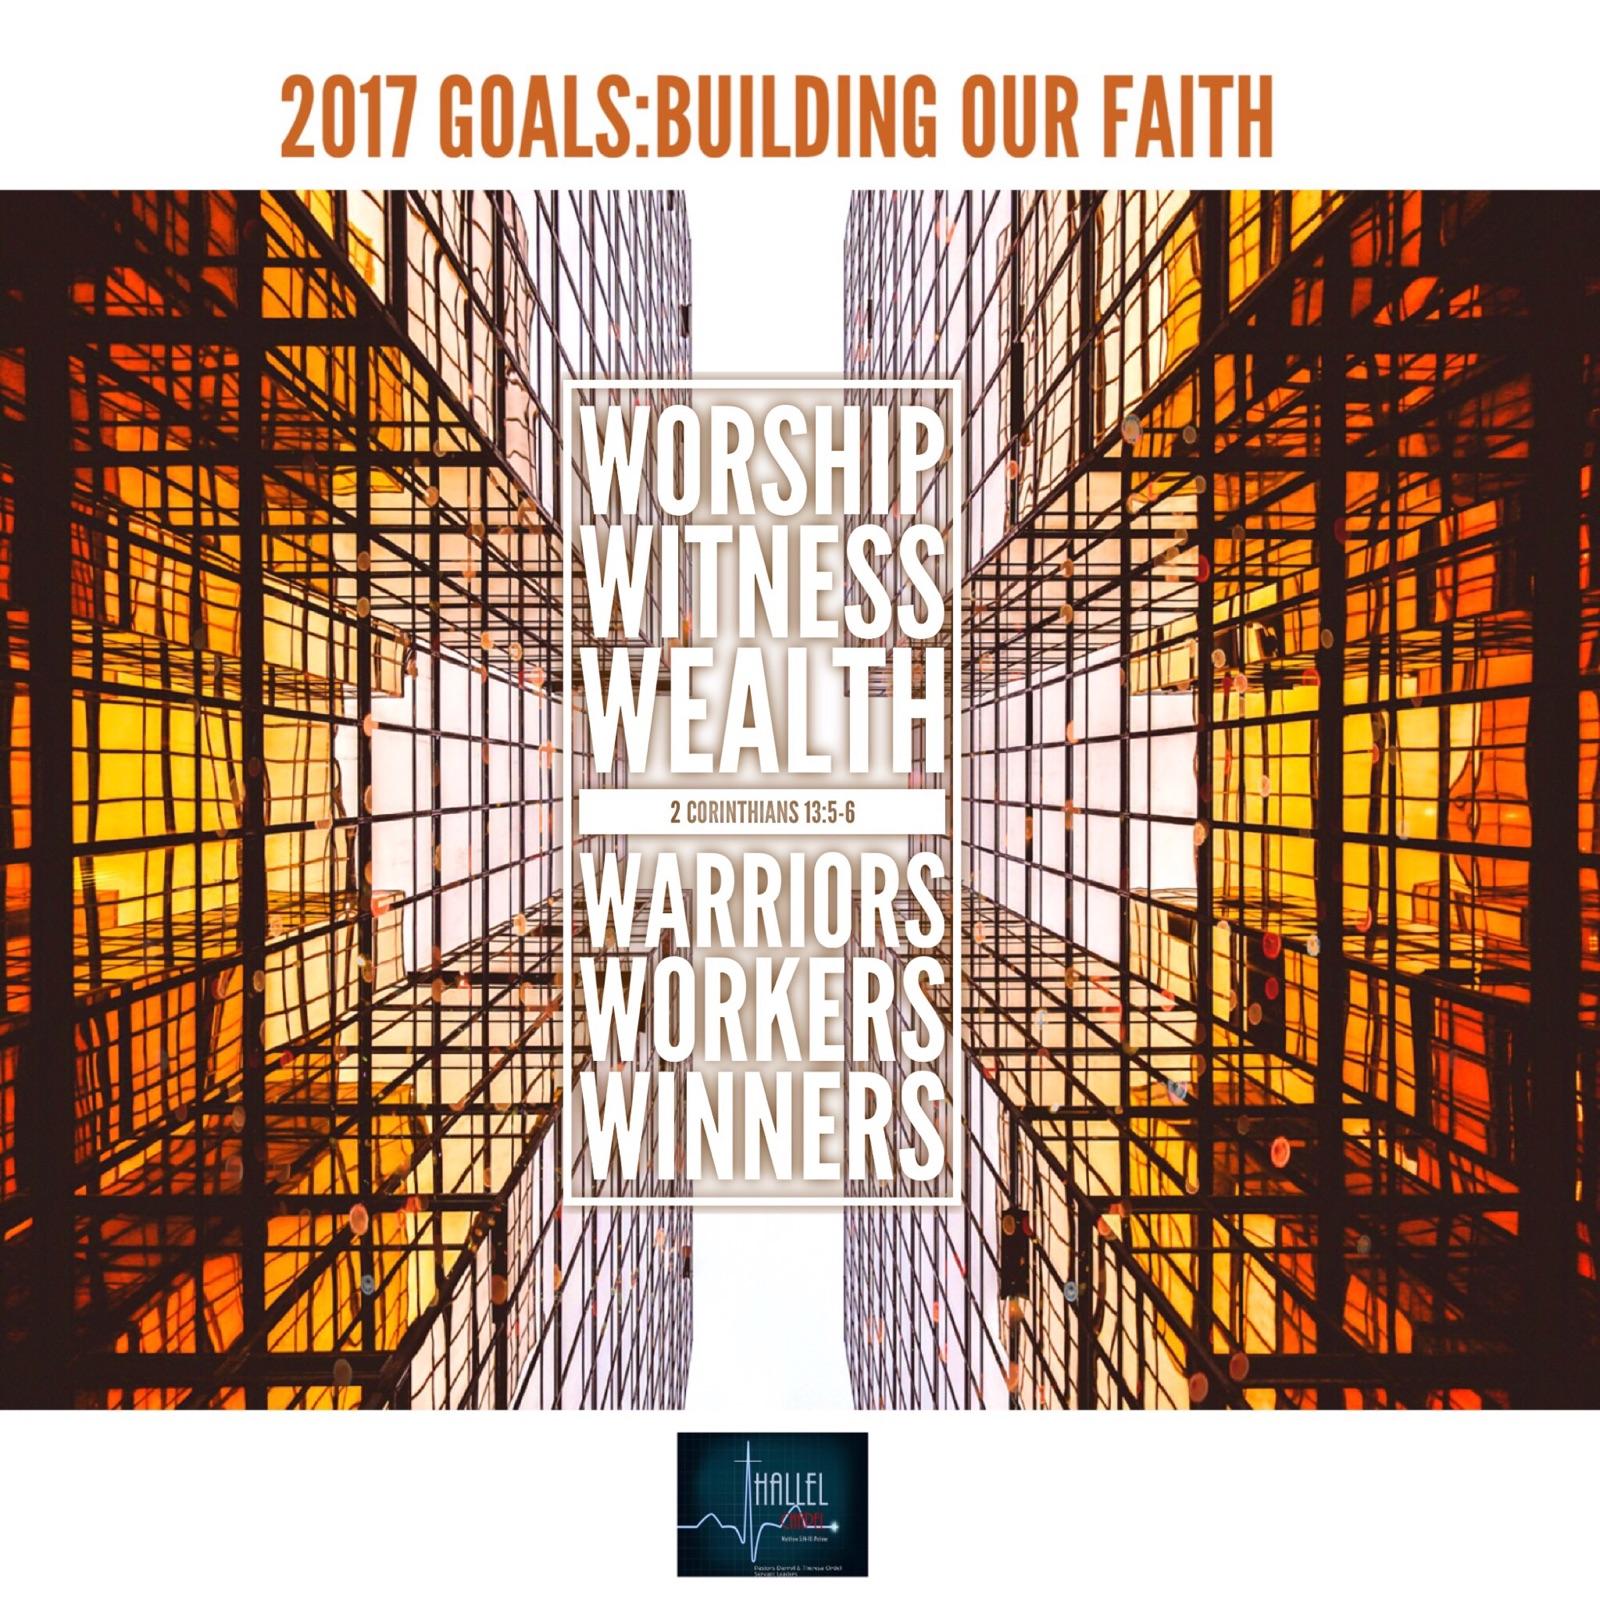 2017 GOALS: BUILDING OUR FAITH